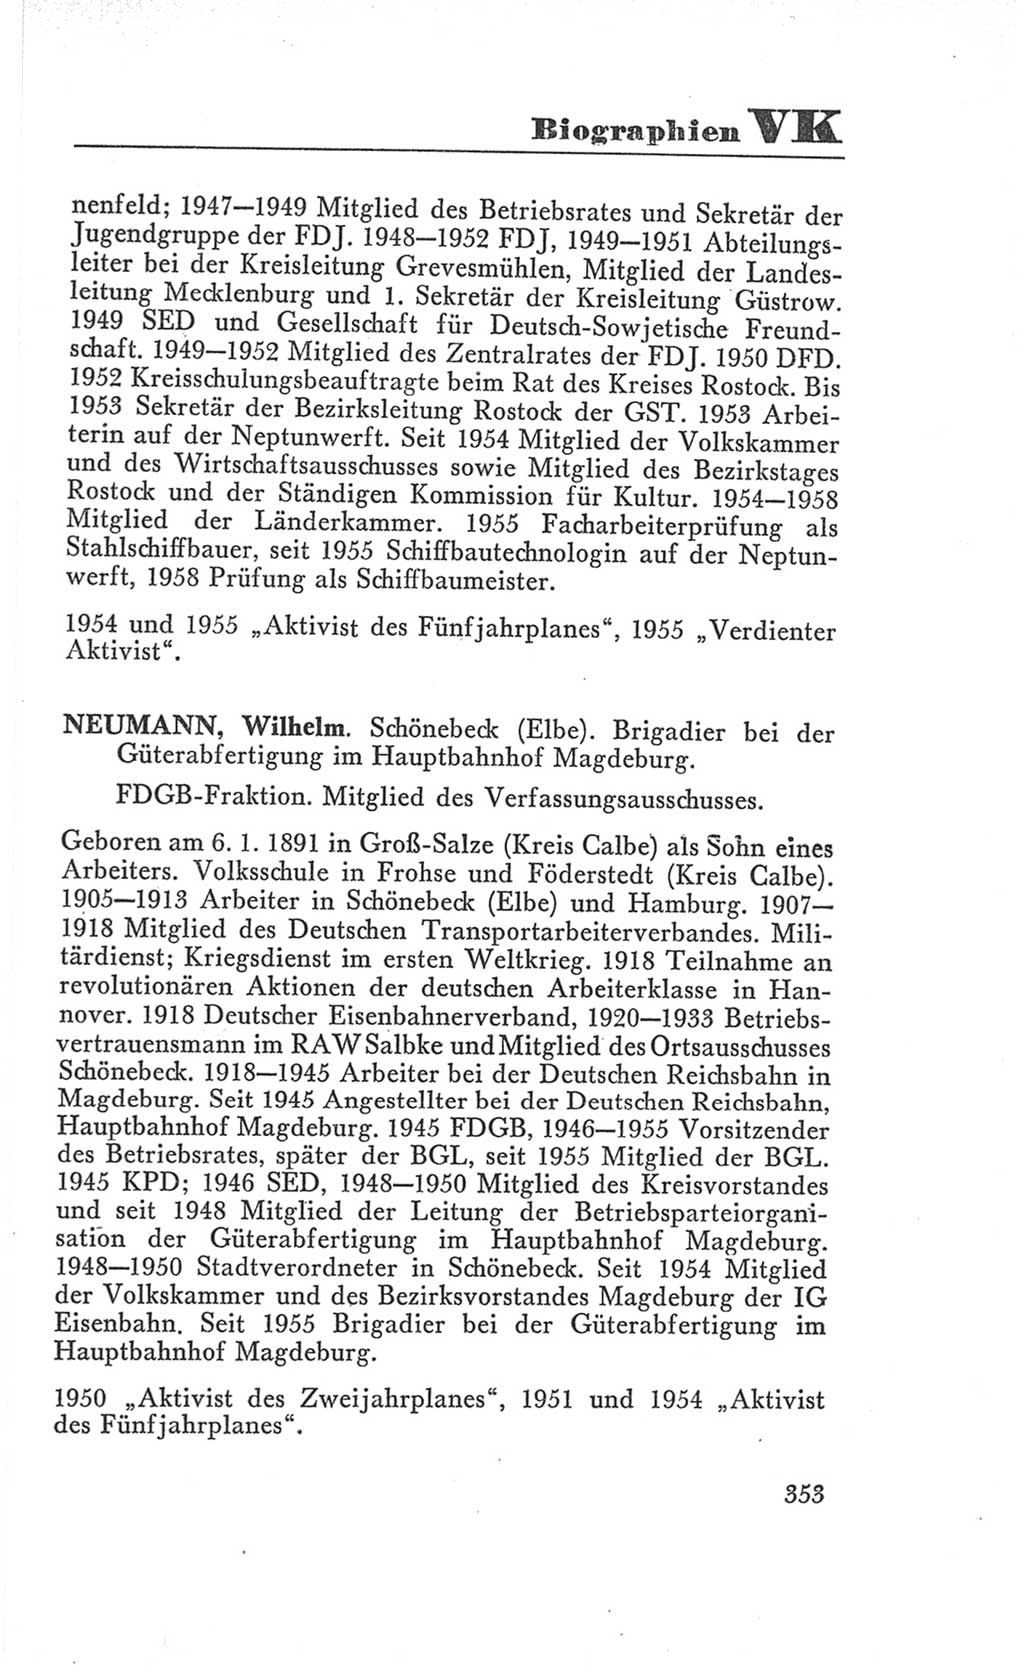 Handbuch der Volkskammer (VK) der Deutschen Demokratischen Republik (DDR), 3. Wahlperiode 1958-1963, Seite 353 (Hdb. VK. DDR 3. WP. 1958-1963, S. 353)